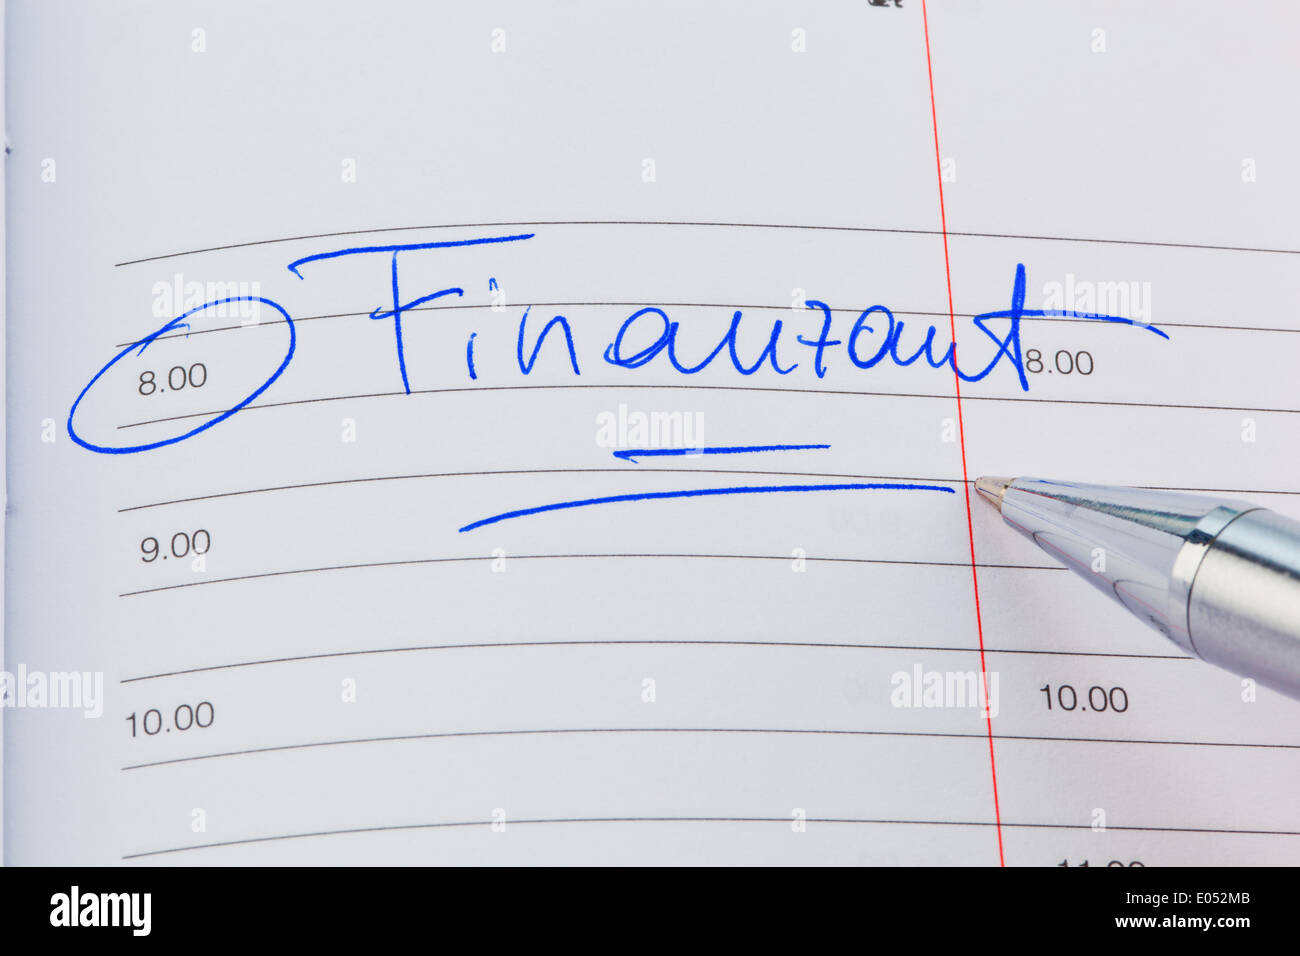 Un appuntamento viene messo giù in un calendario: Ufficio delle imposte, Ein Termin ist in einem Kalender eingetragen: Finanzamt Foto Stock